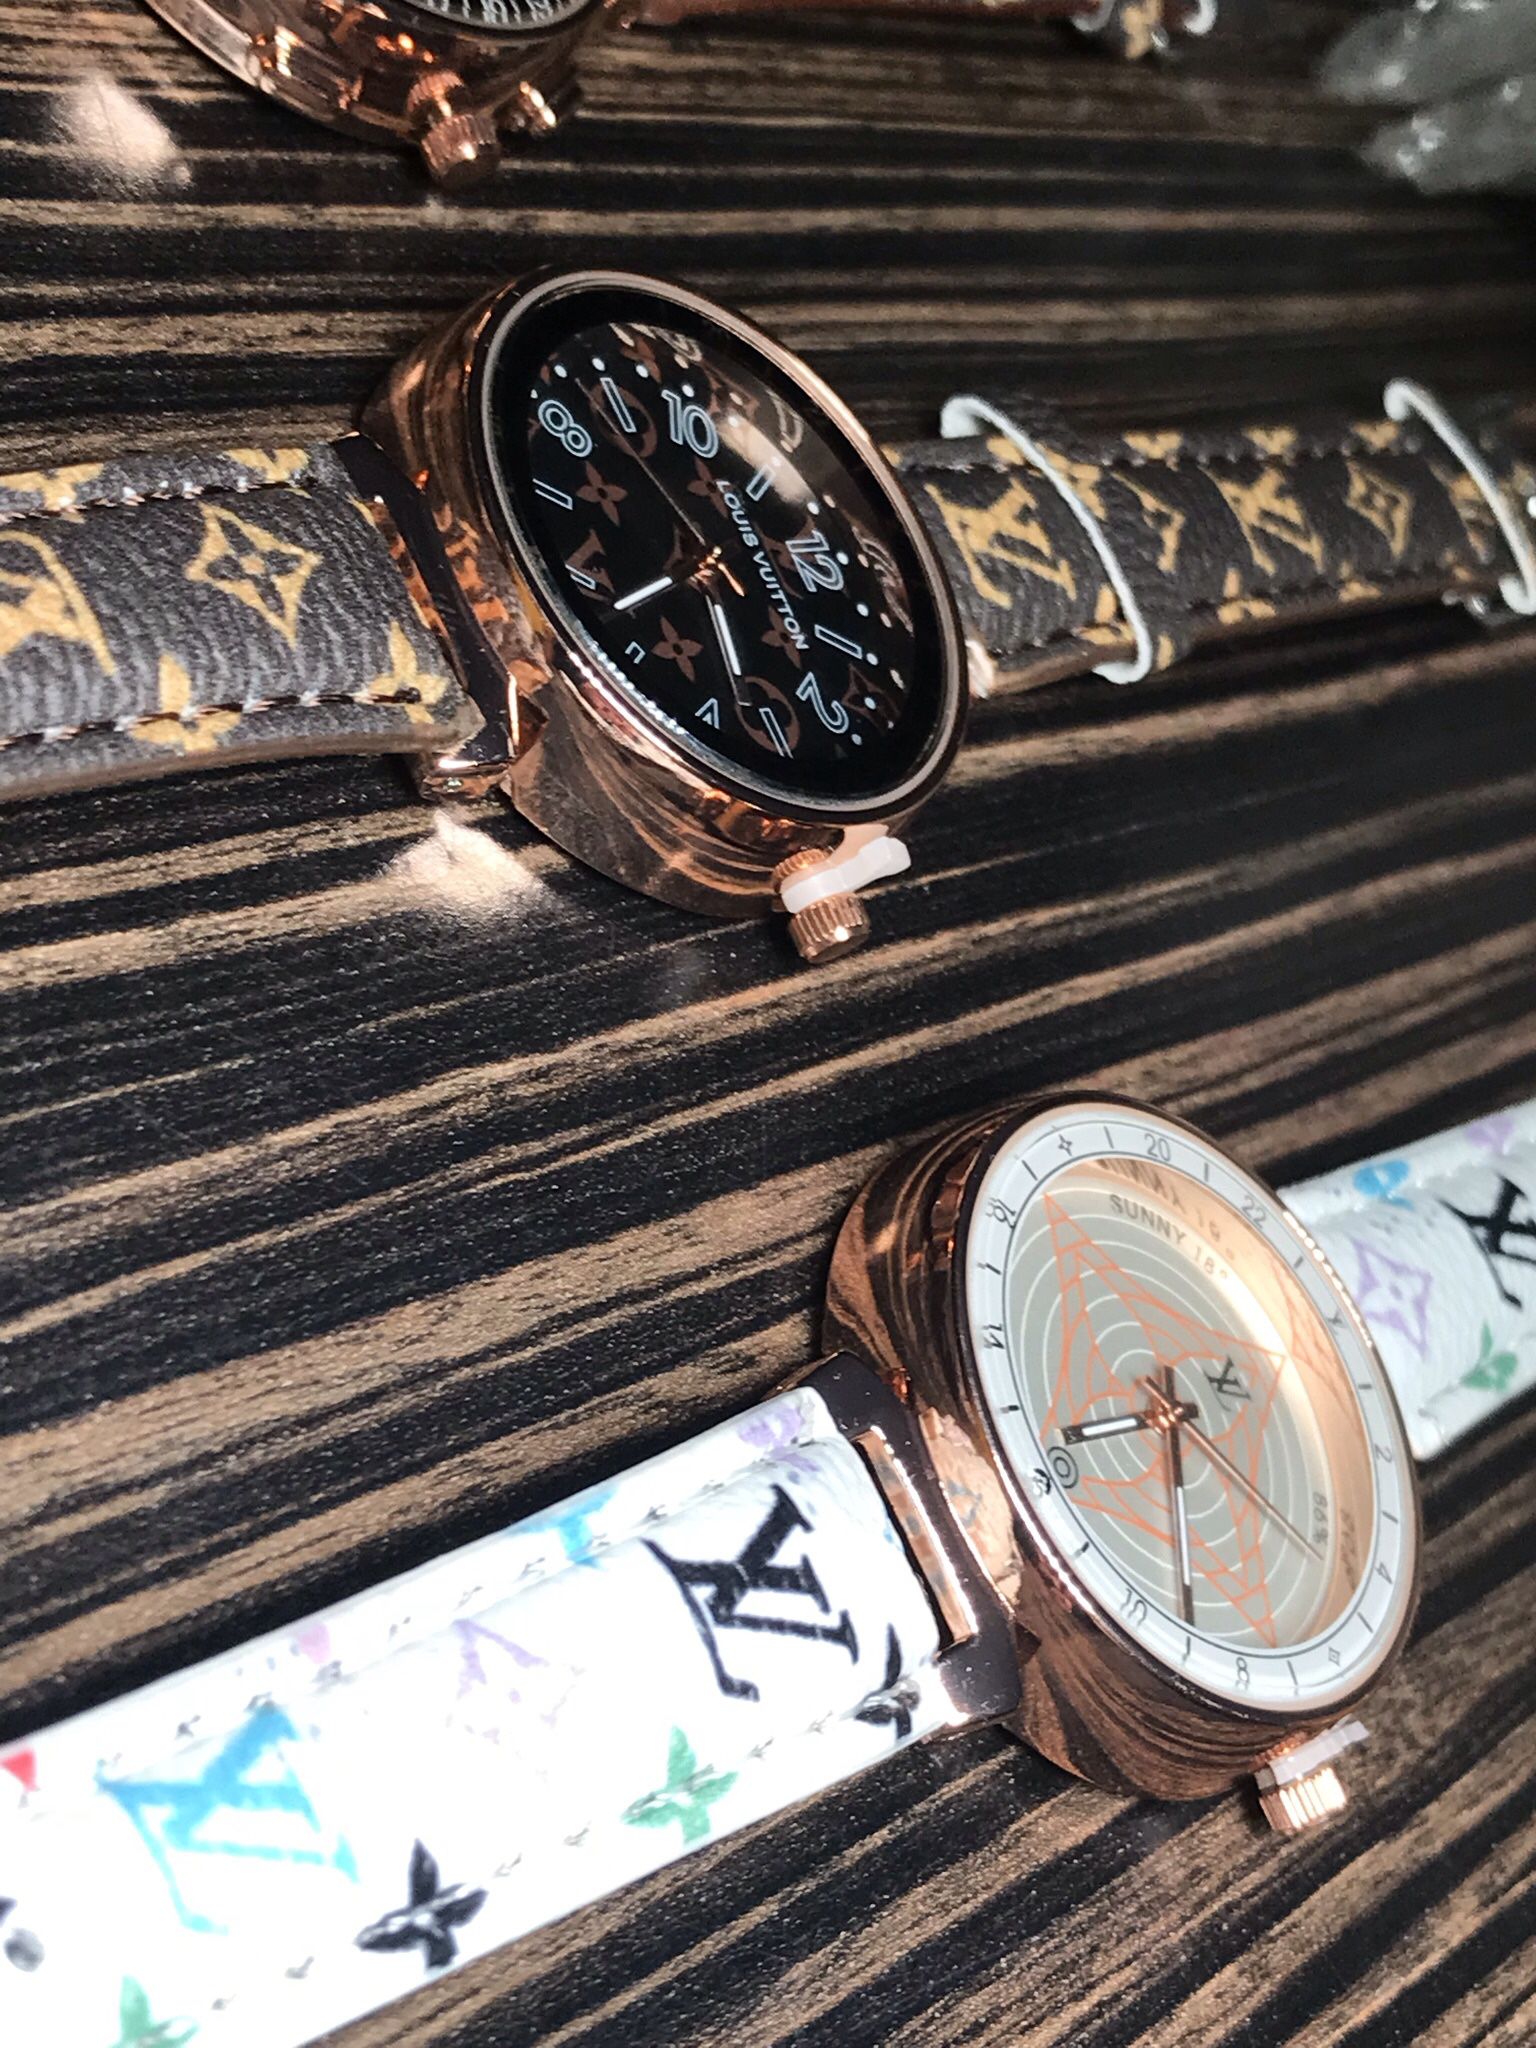 Louis Vuitton Paris Vintage Watch for Sale in Miami, FL - OfferUp